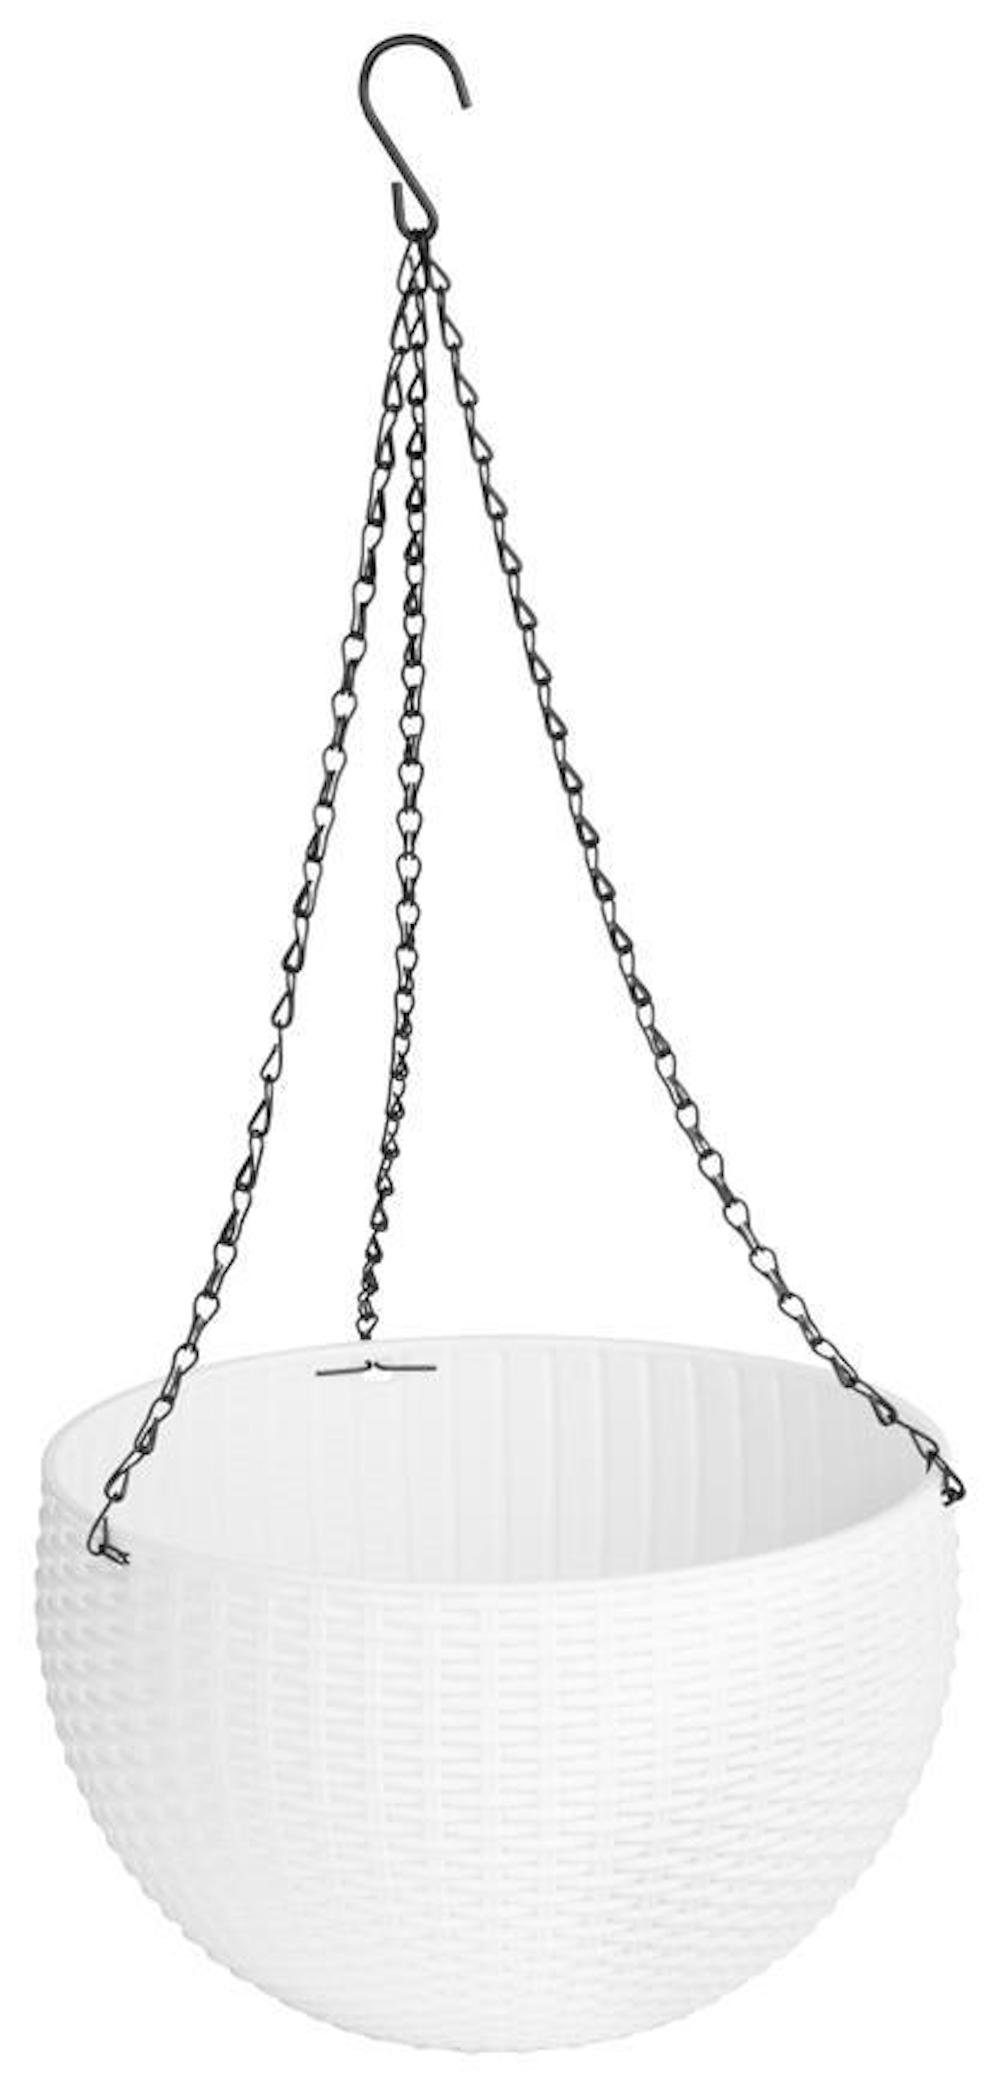 835, PROREGAL® Hang, GDA Blumentopf Blumentopf Kette, weiß 26x16cm, Modern